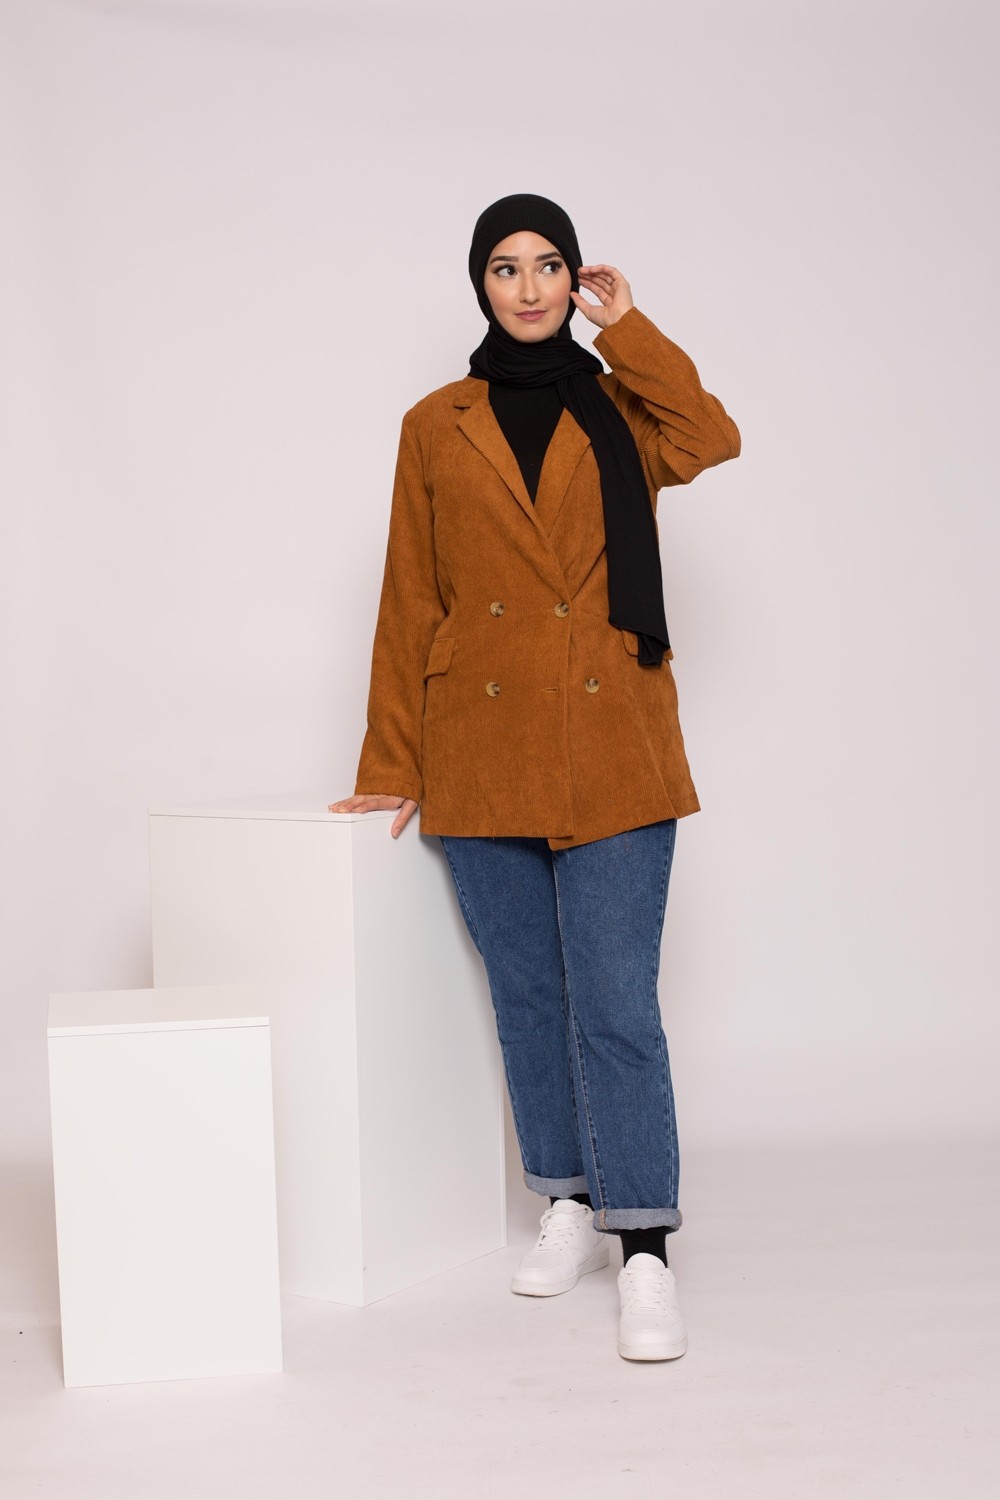 Blazer velours côtelé camel collection hijab hiver pas cher et moderne